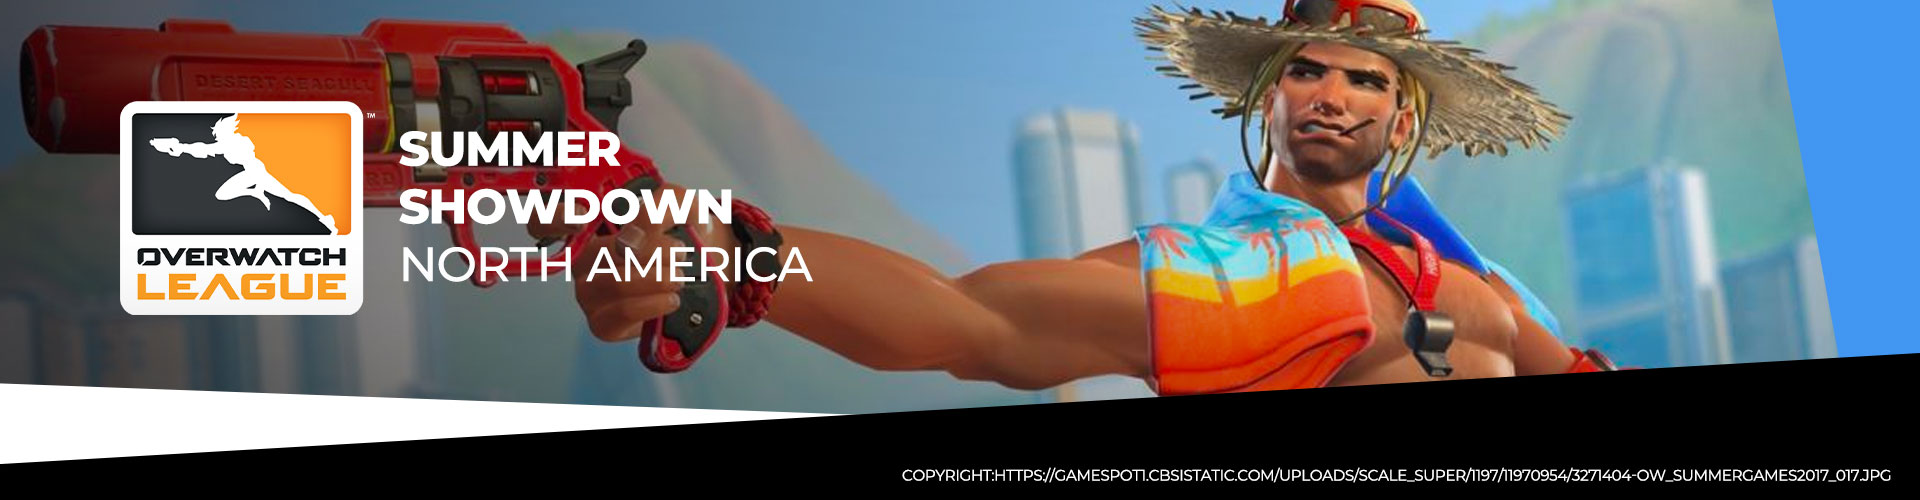 Turneringssida för OWL Summer Showdown 2020 Nordamerika.